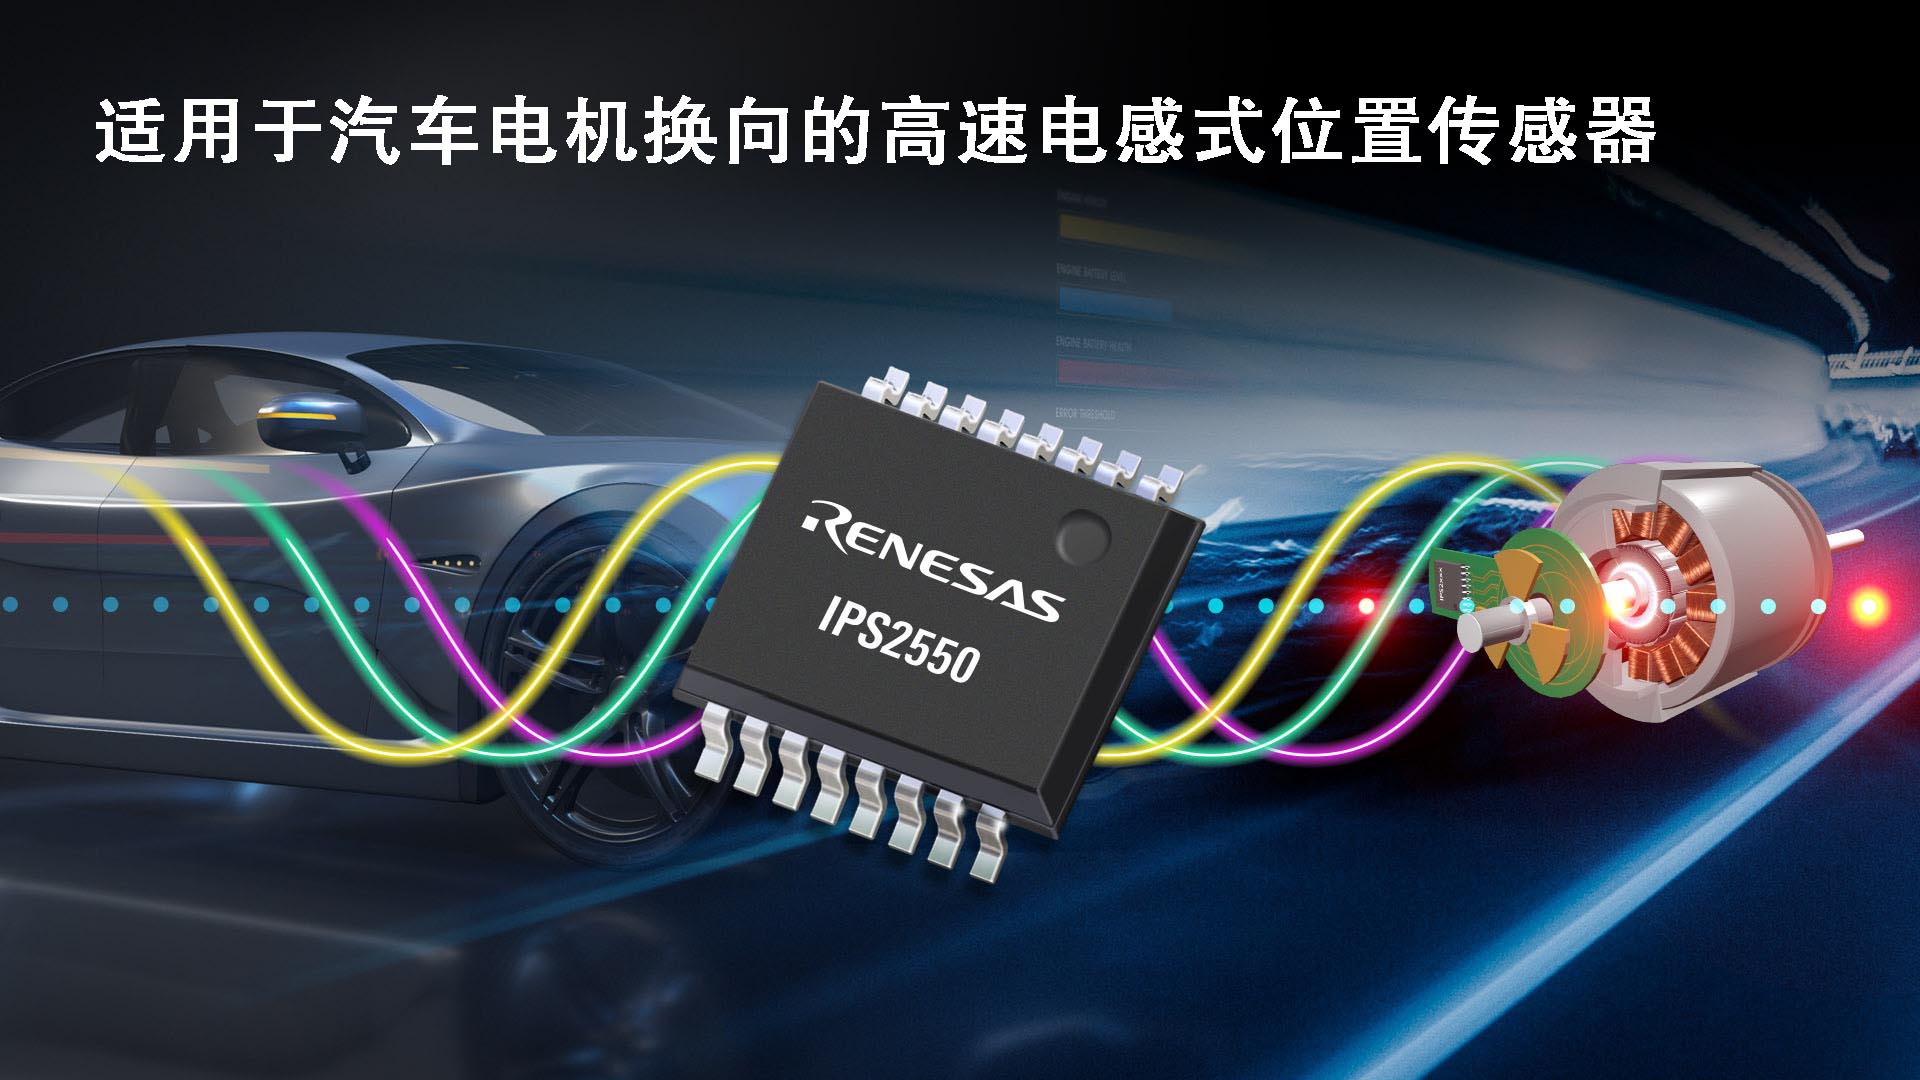 瑞萨电子推出IPS2550传感器 将电感式位置感测产品阵容扩展至汽车电机换向应用